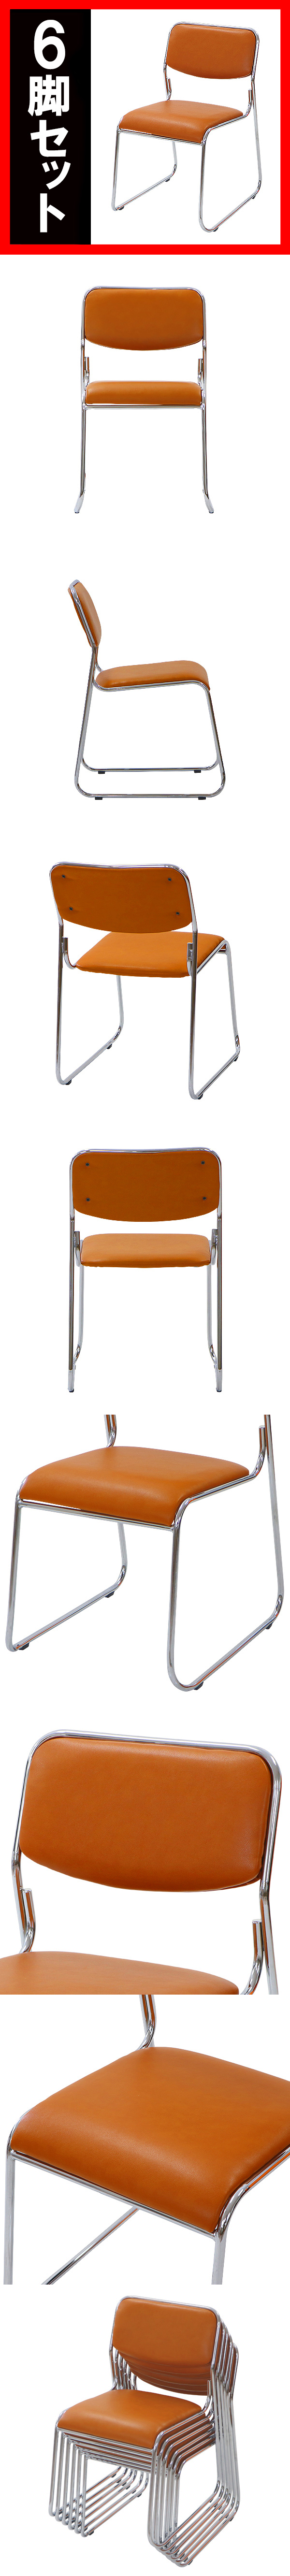 人気定番お得送料無料 6脚セット ミーティングチェア 会議イス 会議椅子 スタッキングチェア パイプチェア パイプイス パイプ椅子 キャメル パイプイス